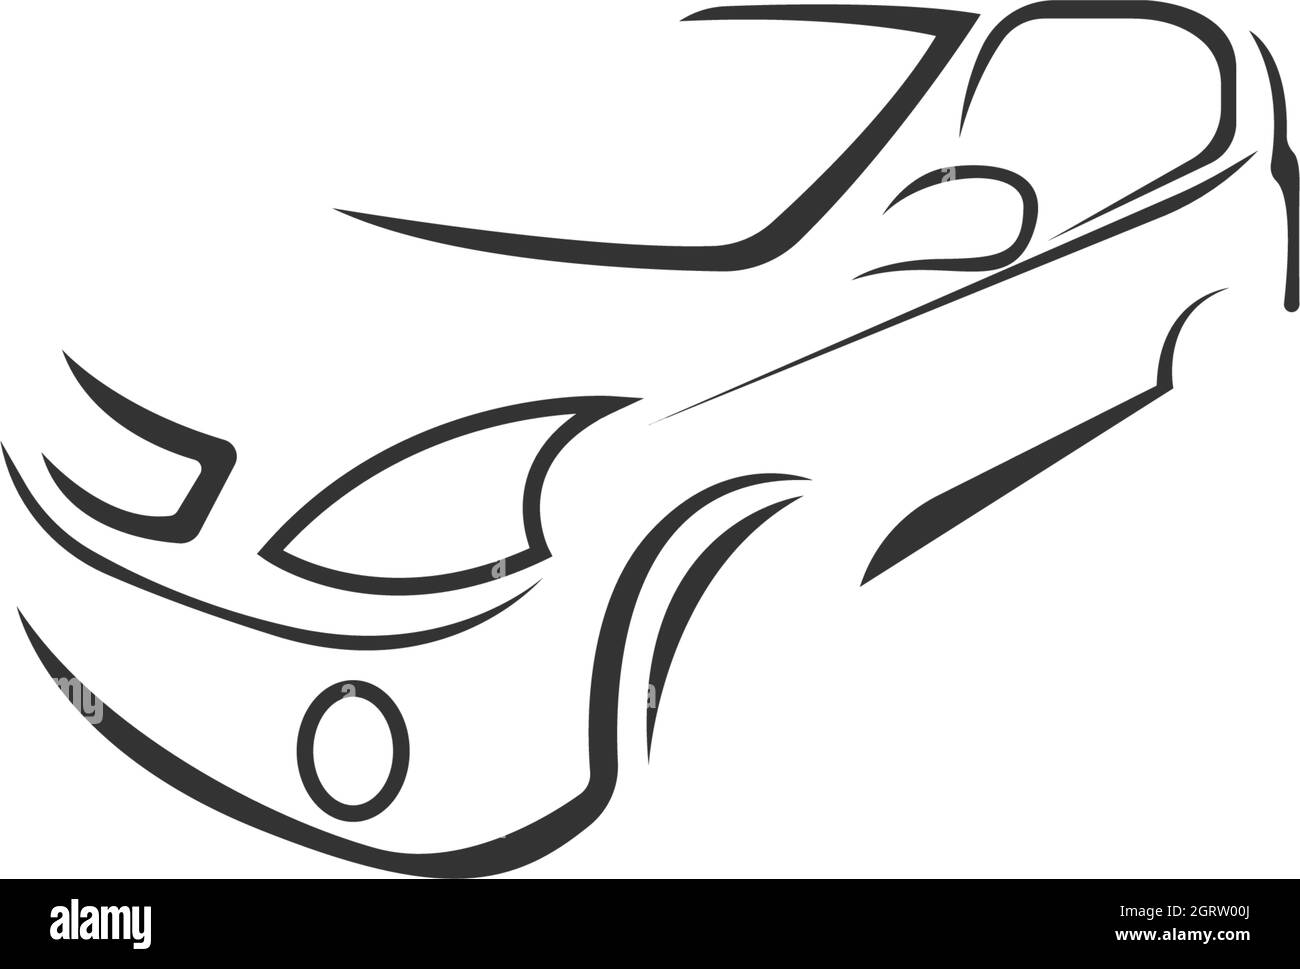 Car icon logo design concept illustration Stock Vector